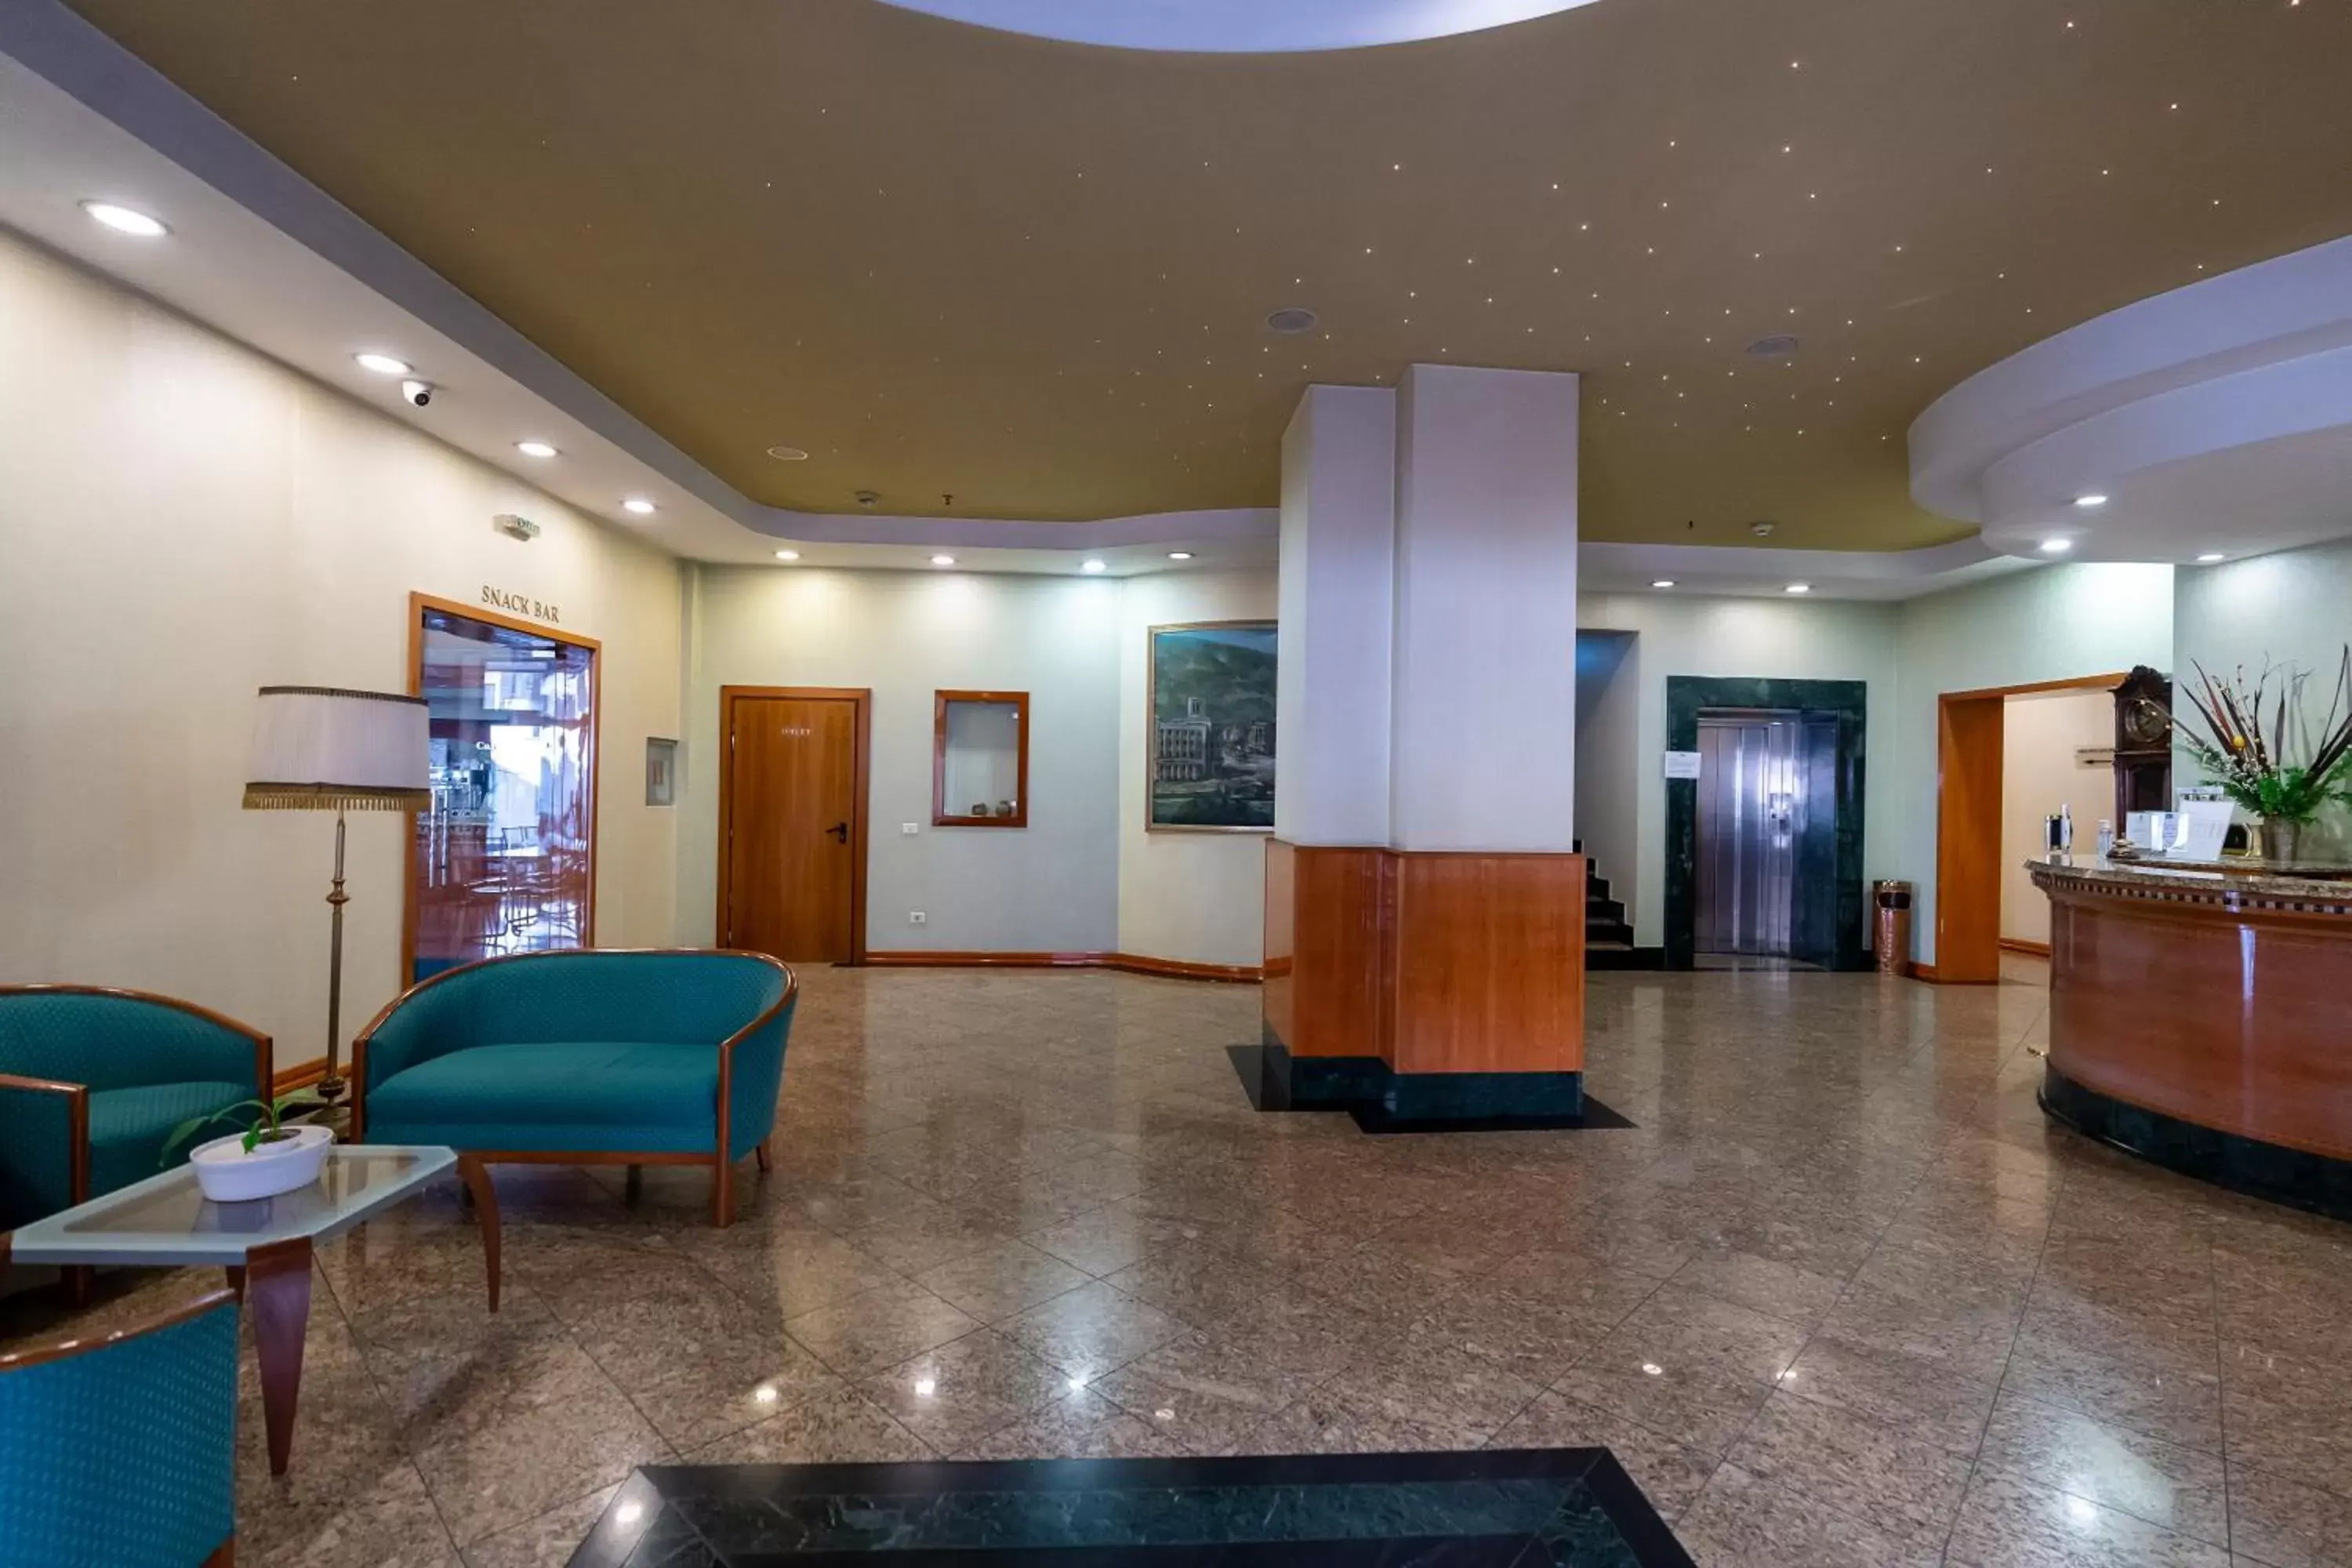 Lobby or reception, Lobby/Reception in Best Western Hotel Turist